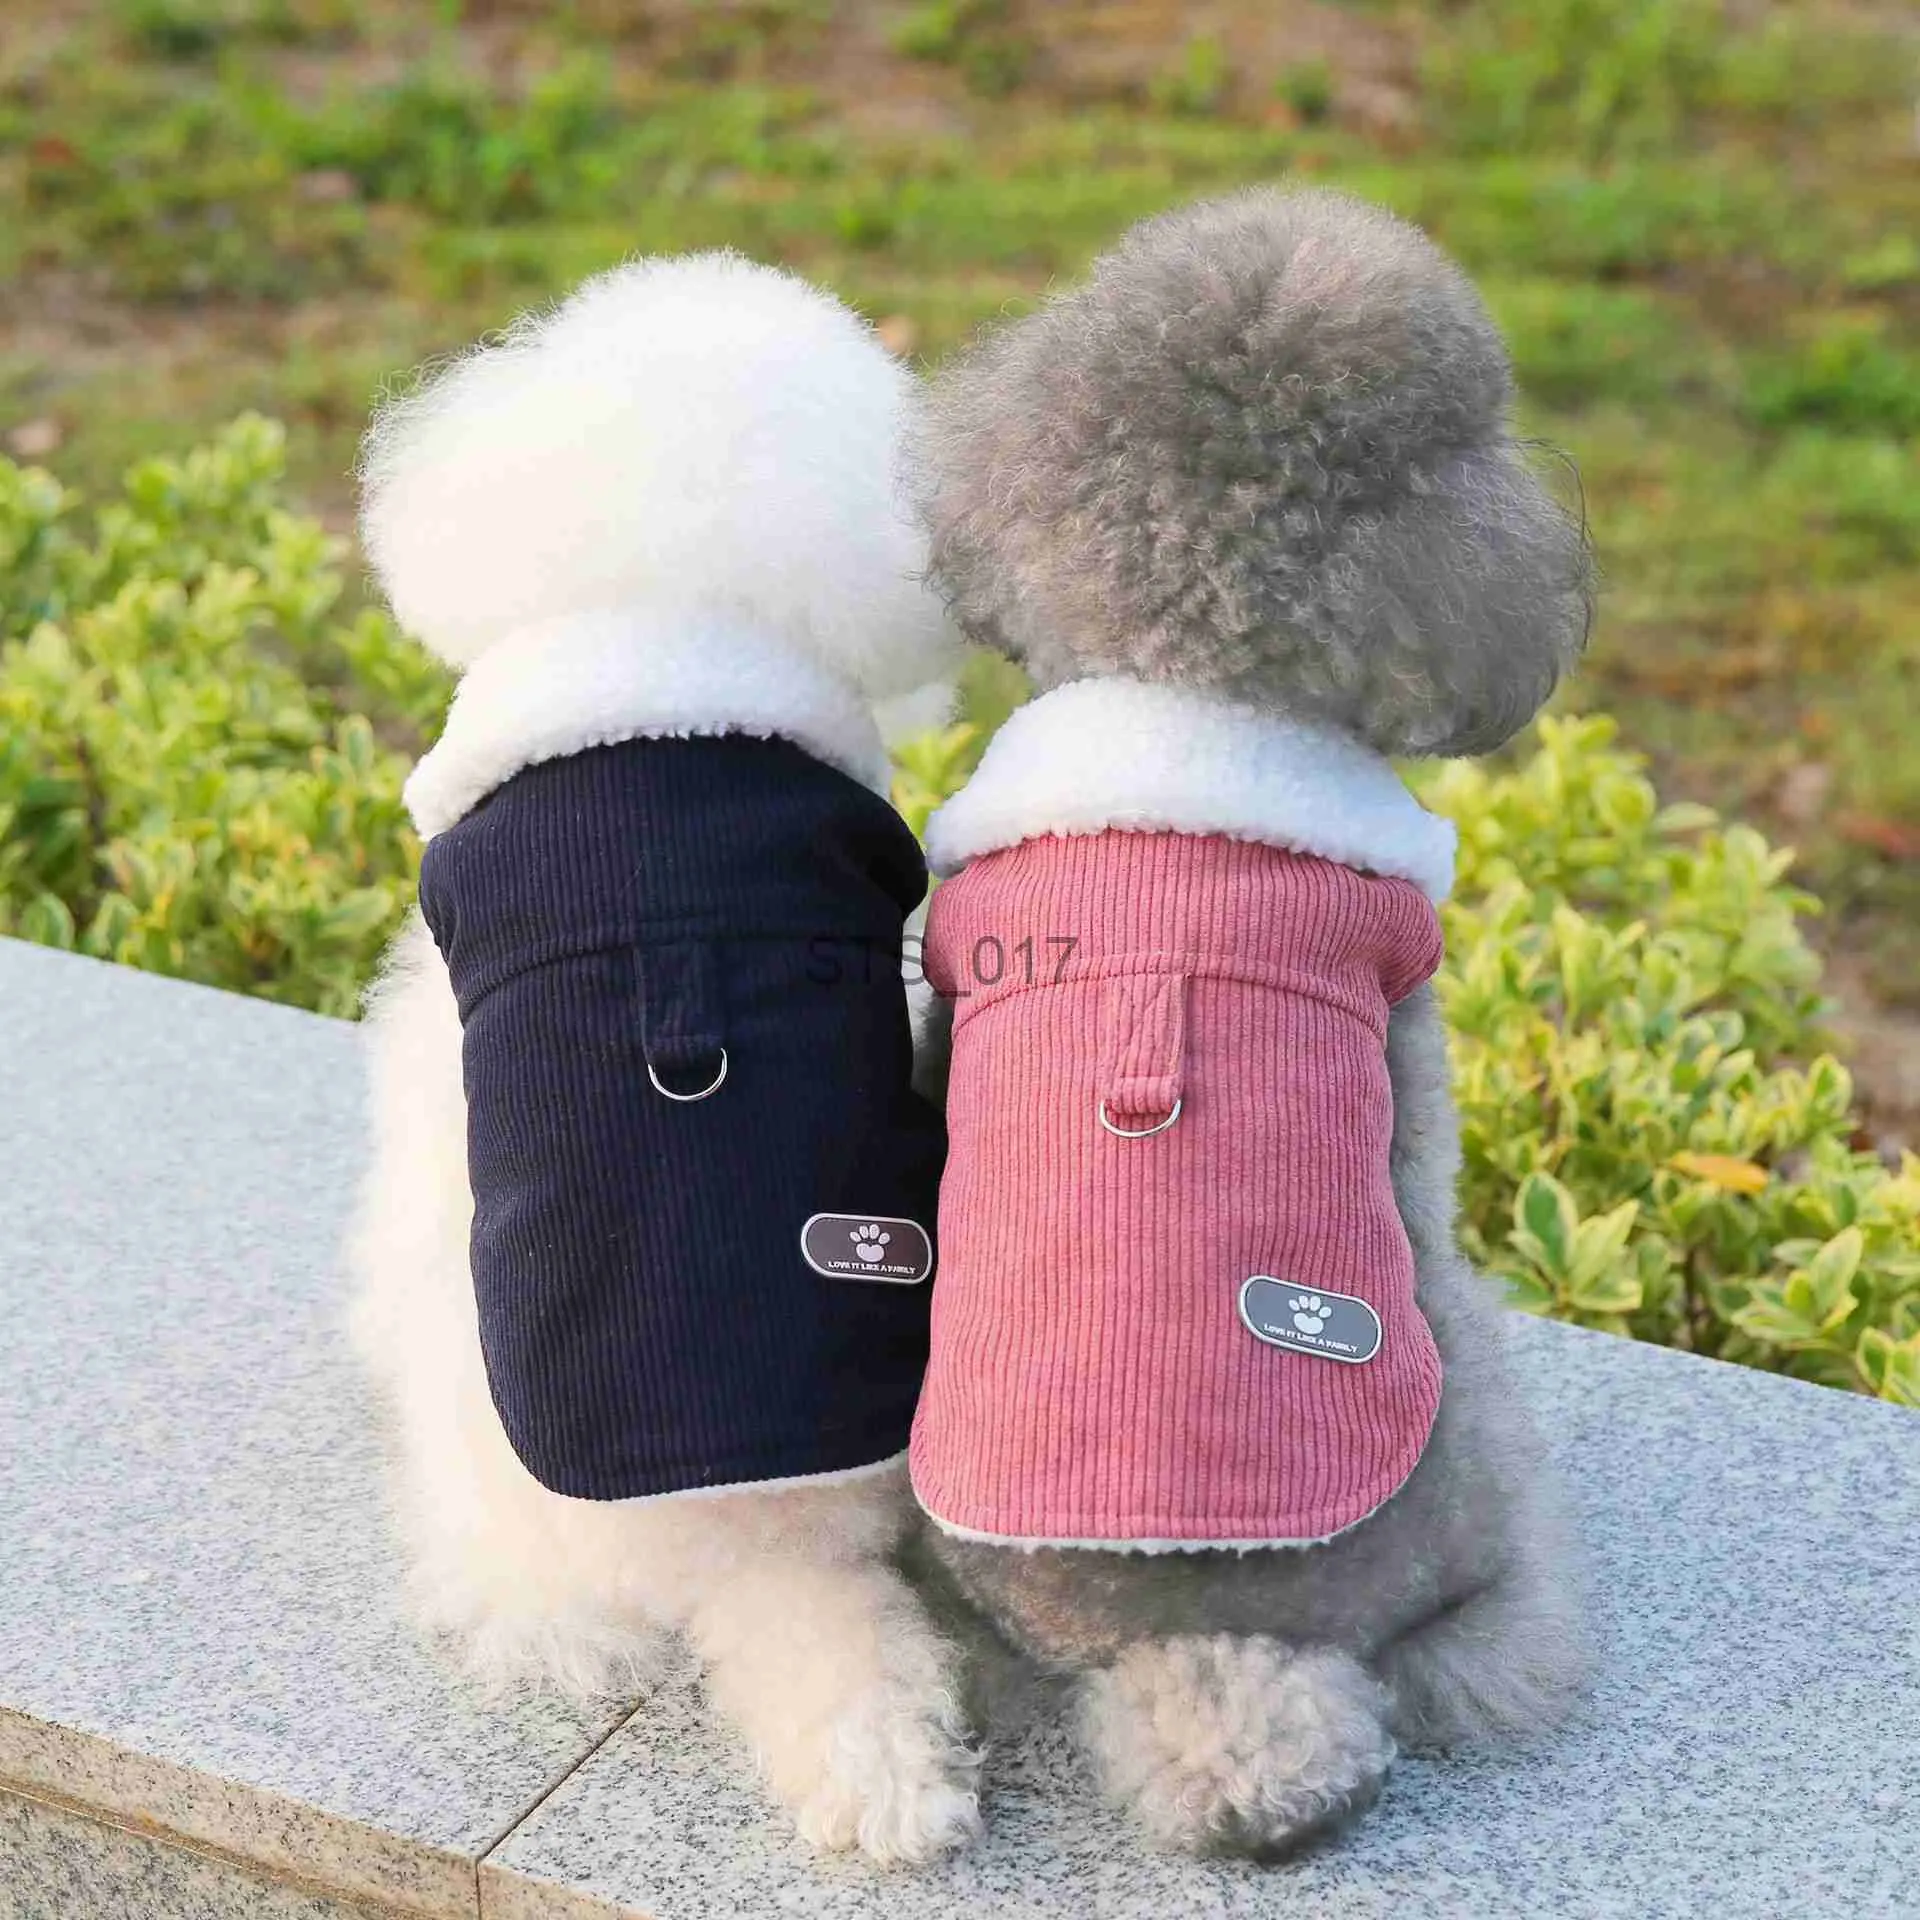 ملابس الكلب حيوان أزياء أزياء الخريف الشتاء المتوسطة الصغيرة الكلب ملابس دافئة الصوف لطيف تسخير معطف حلو هريرة جرو ET Yorkshire Poodle X0904